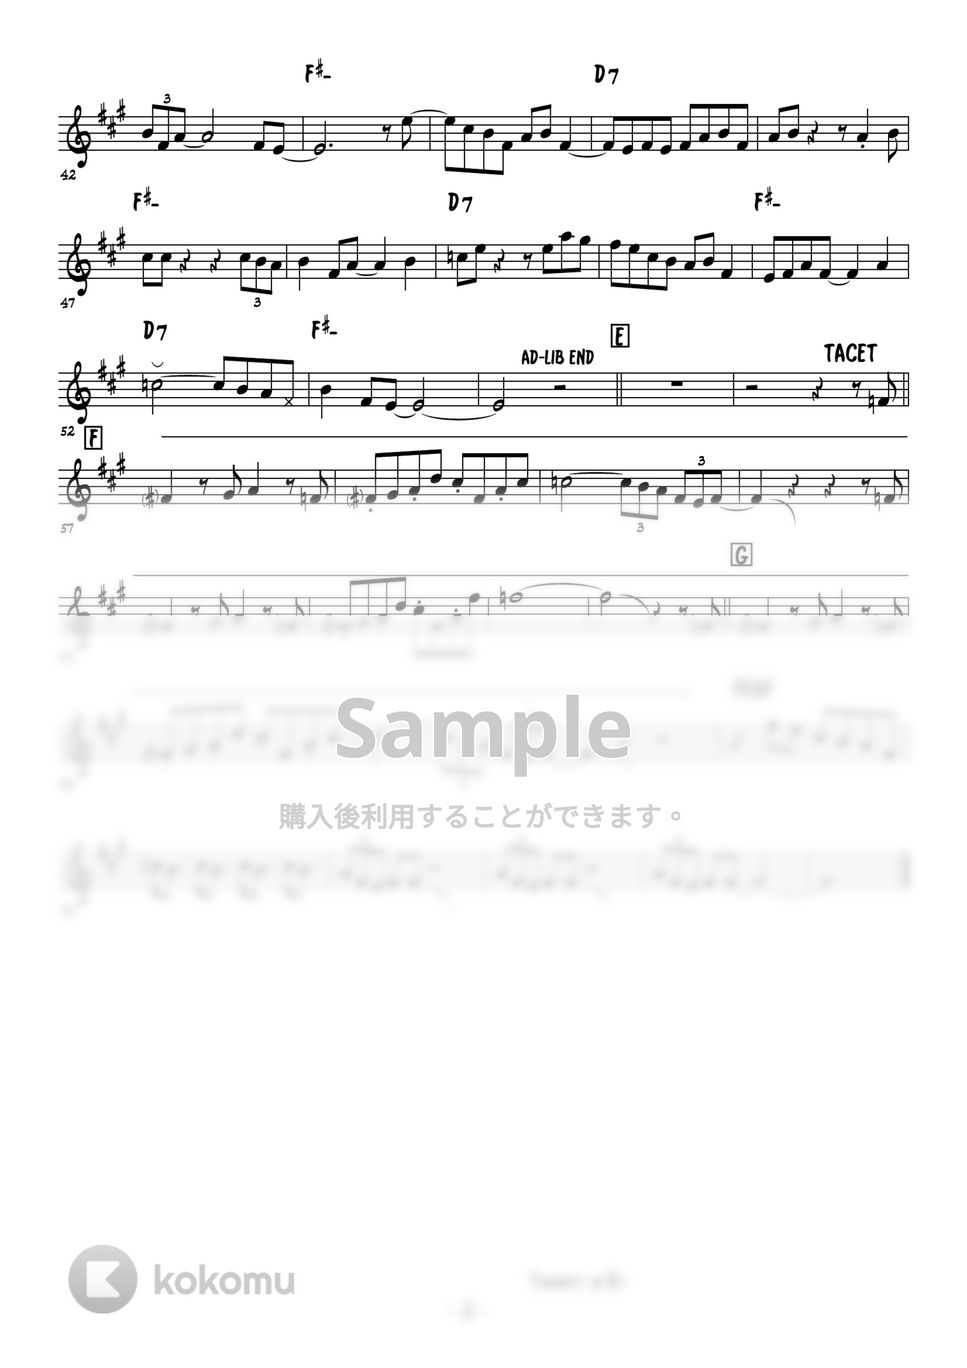 ピンクパンサー - The Pink Panther Theme (トランペット演奏例) by 高田将利